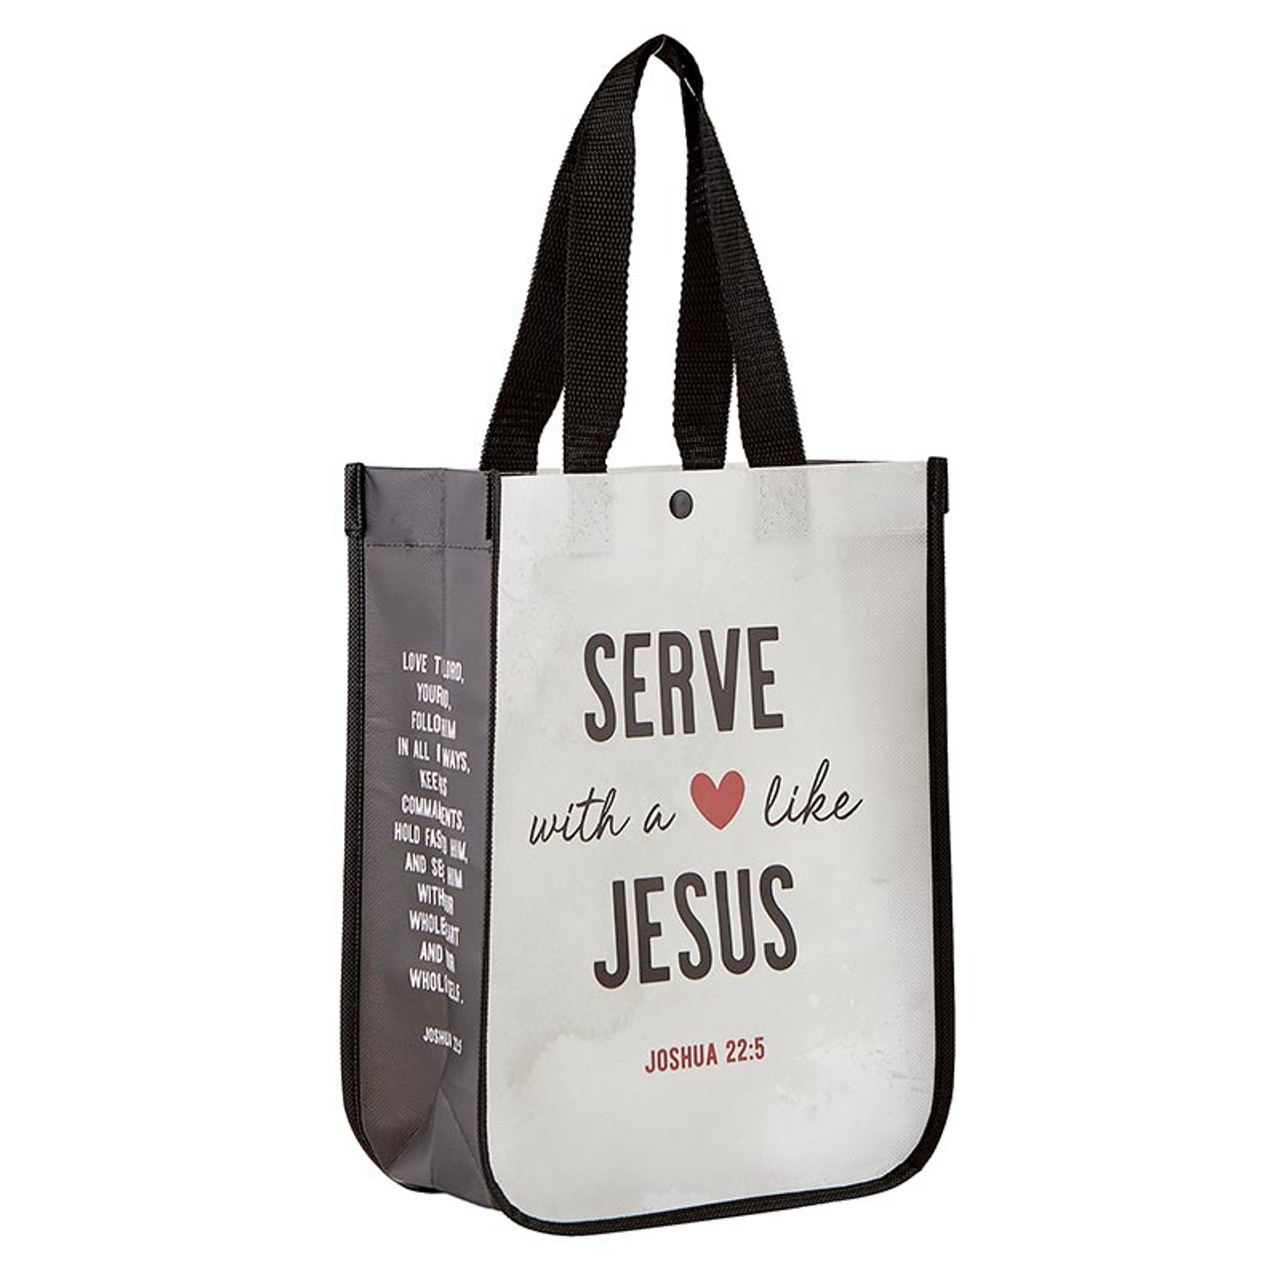 Come, Lord Jesus! Tote Bag | Come, Lord Jesus!